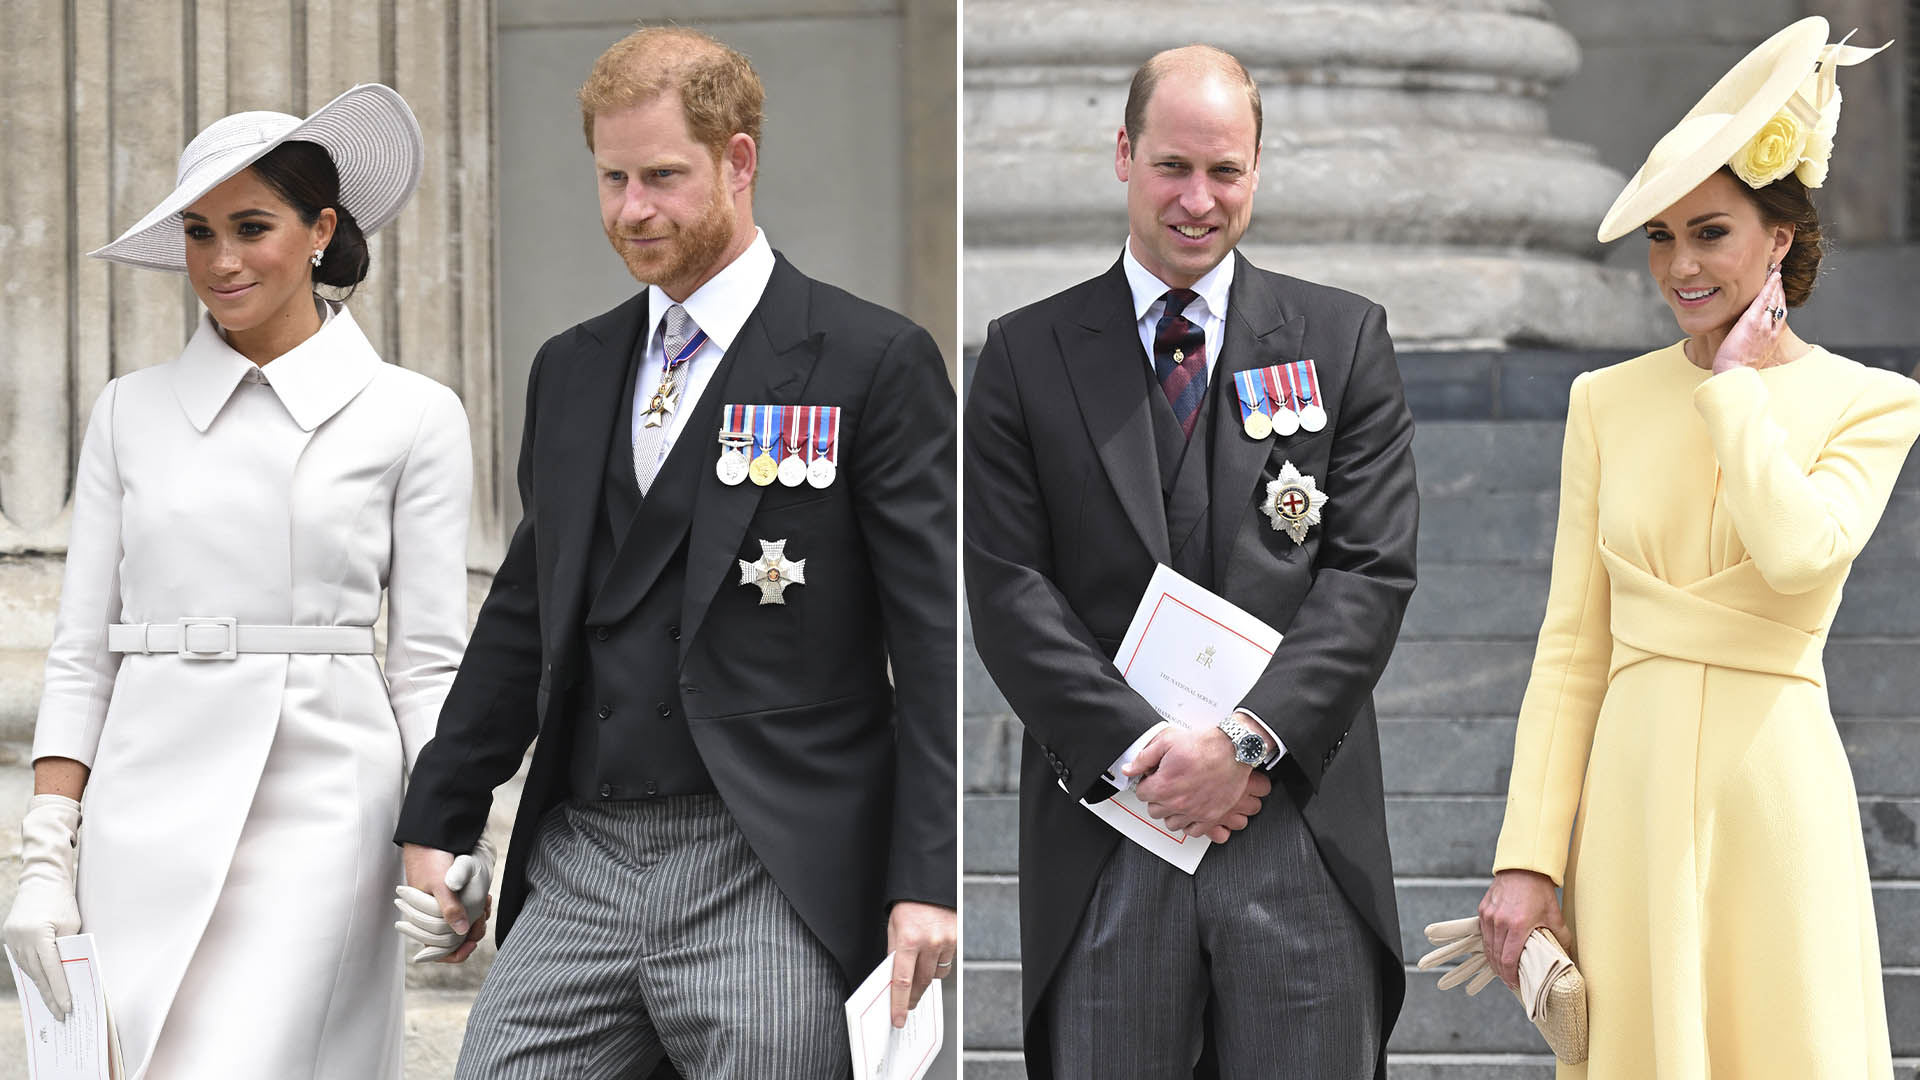 Kate Middleton, igual que Meghan Markle, estuvo radiante en una fecha muy importante para la familia real británica: la celebración del Jubileo de Platino de la Reina Isabel II. La duquesa de Cambridge eligió para la ocasión un vestido amarillo de Emilia Wickstead